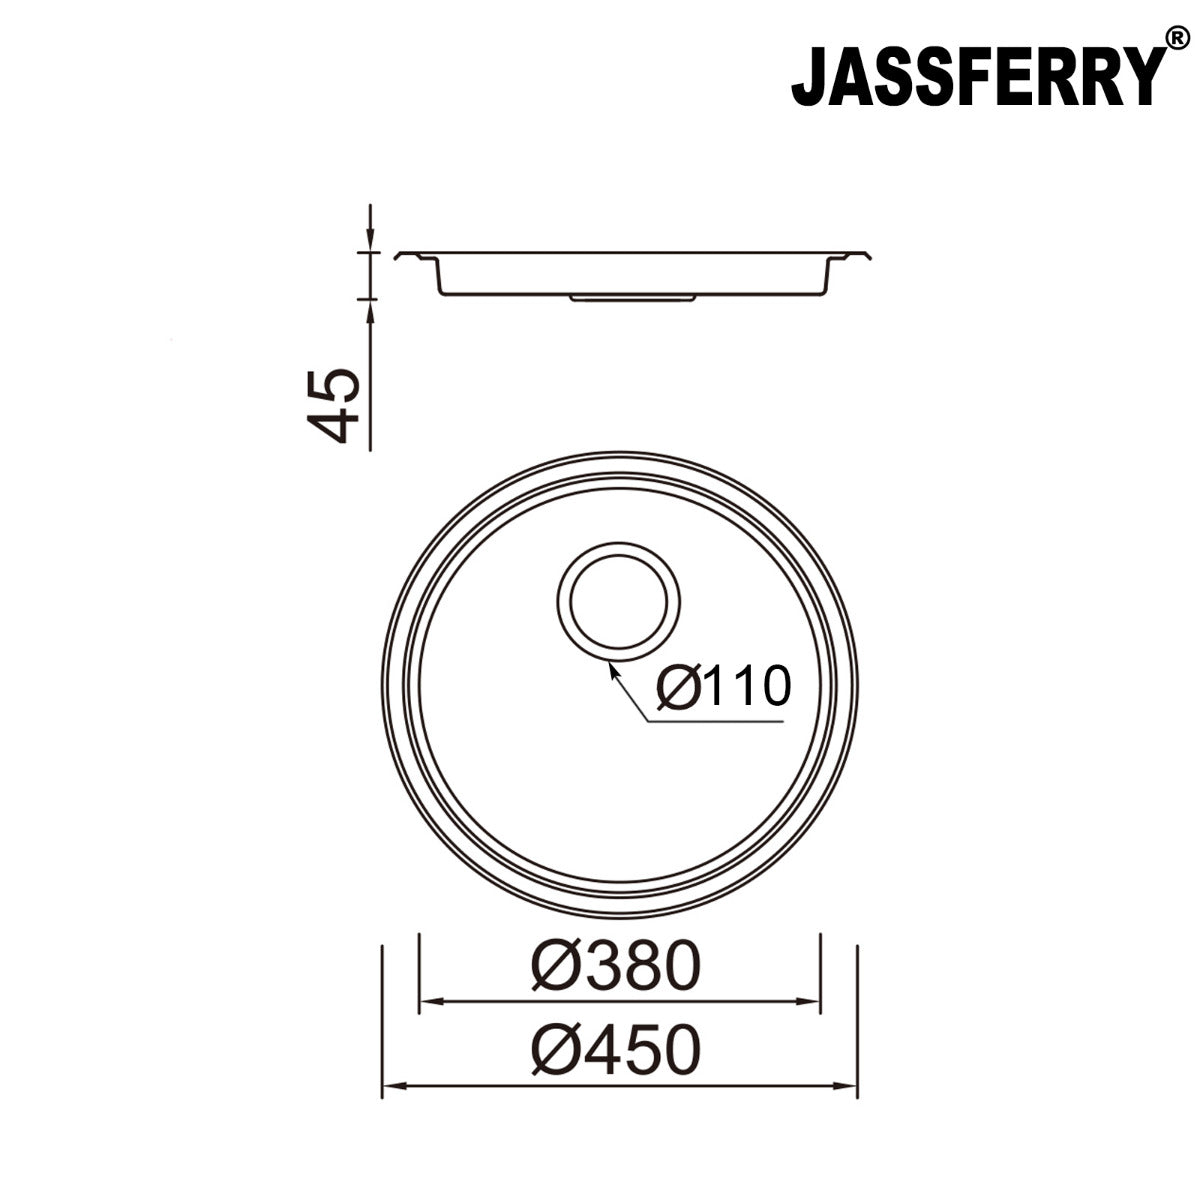 JassferryJASSFERRY 45mm Depth Stainless Steel Sink Round Outdoor Camping DrainerKitchen Sink